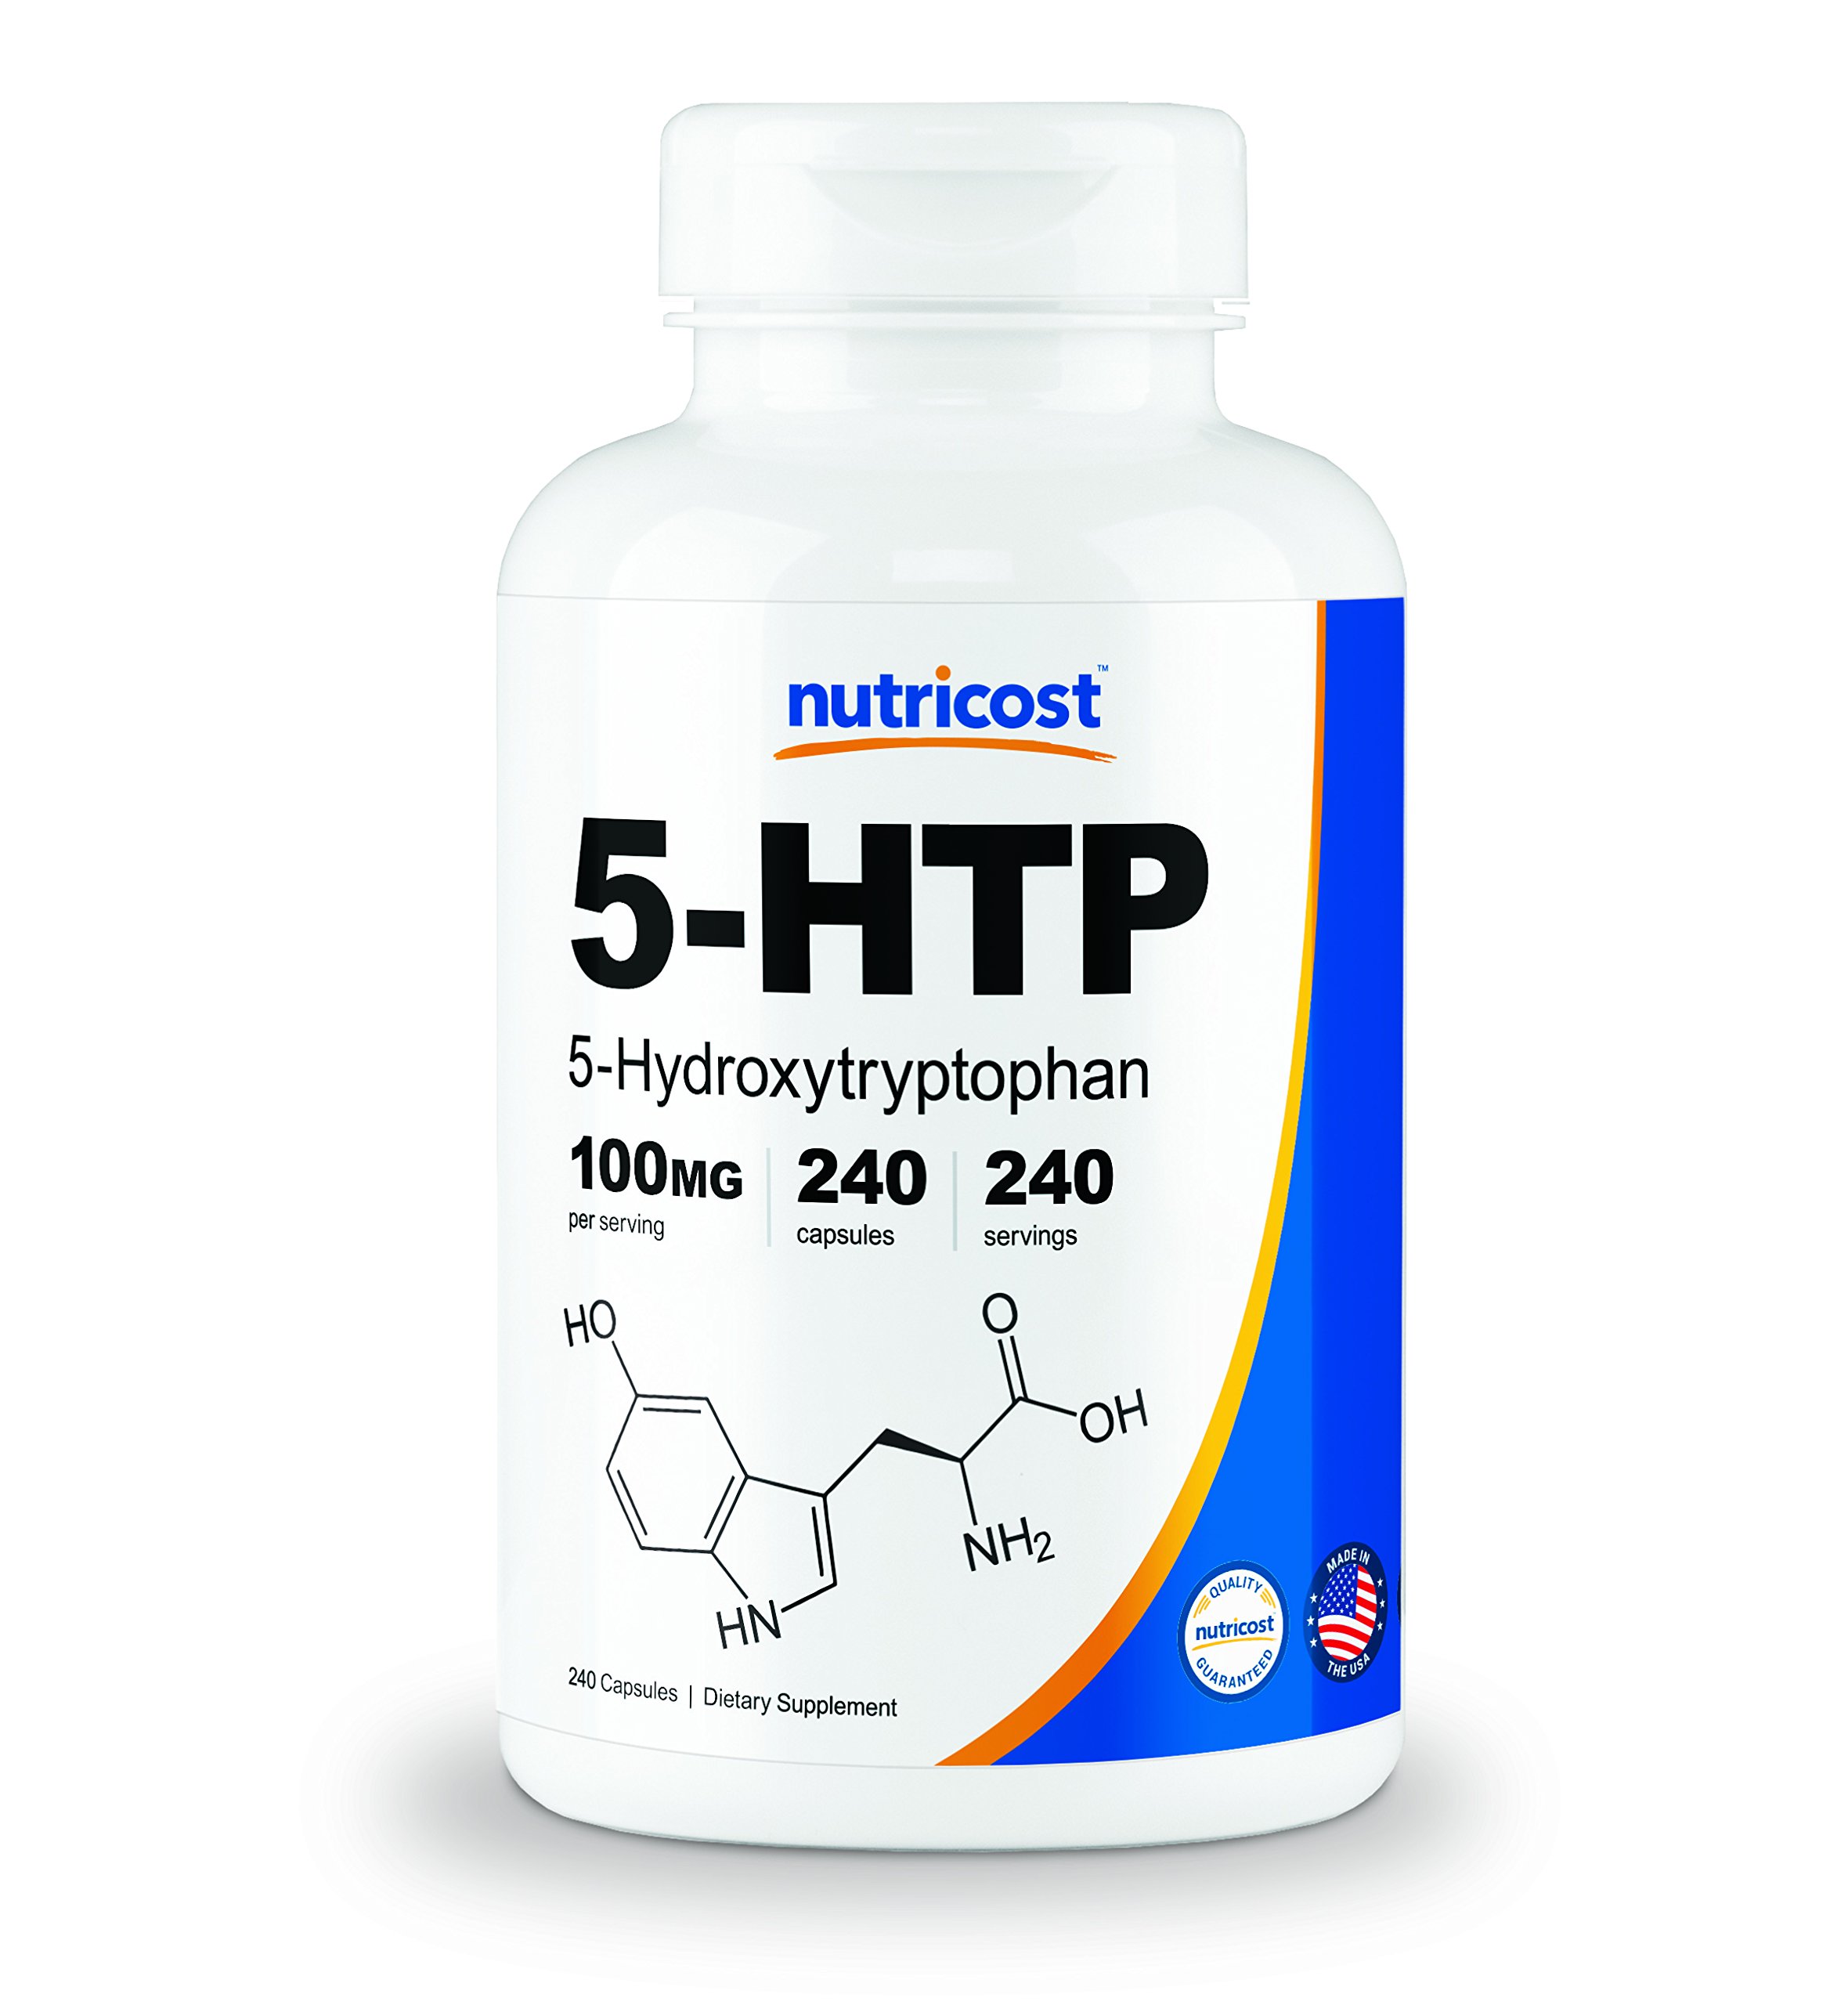 Описание вещества 5-htp, применение его в медицине